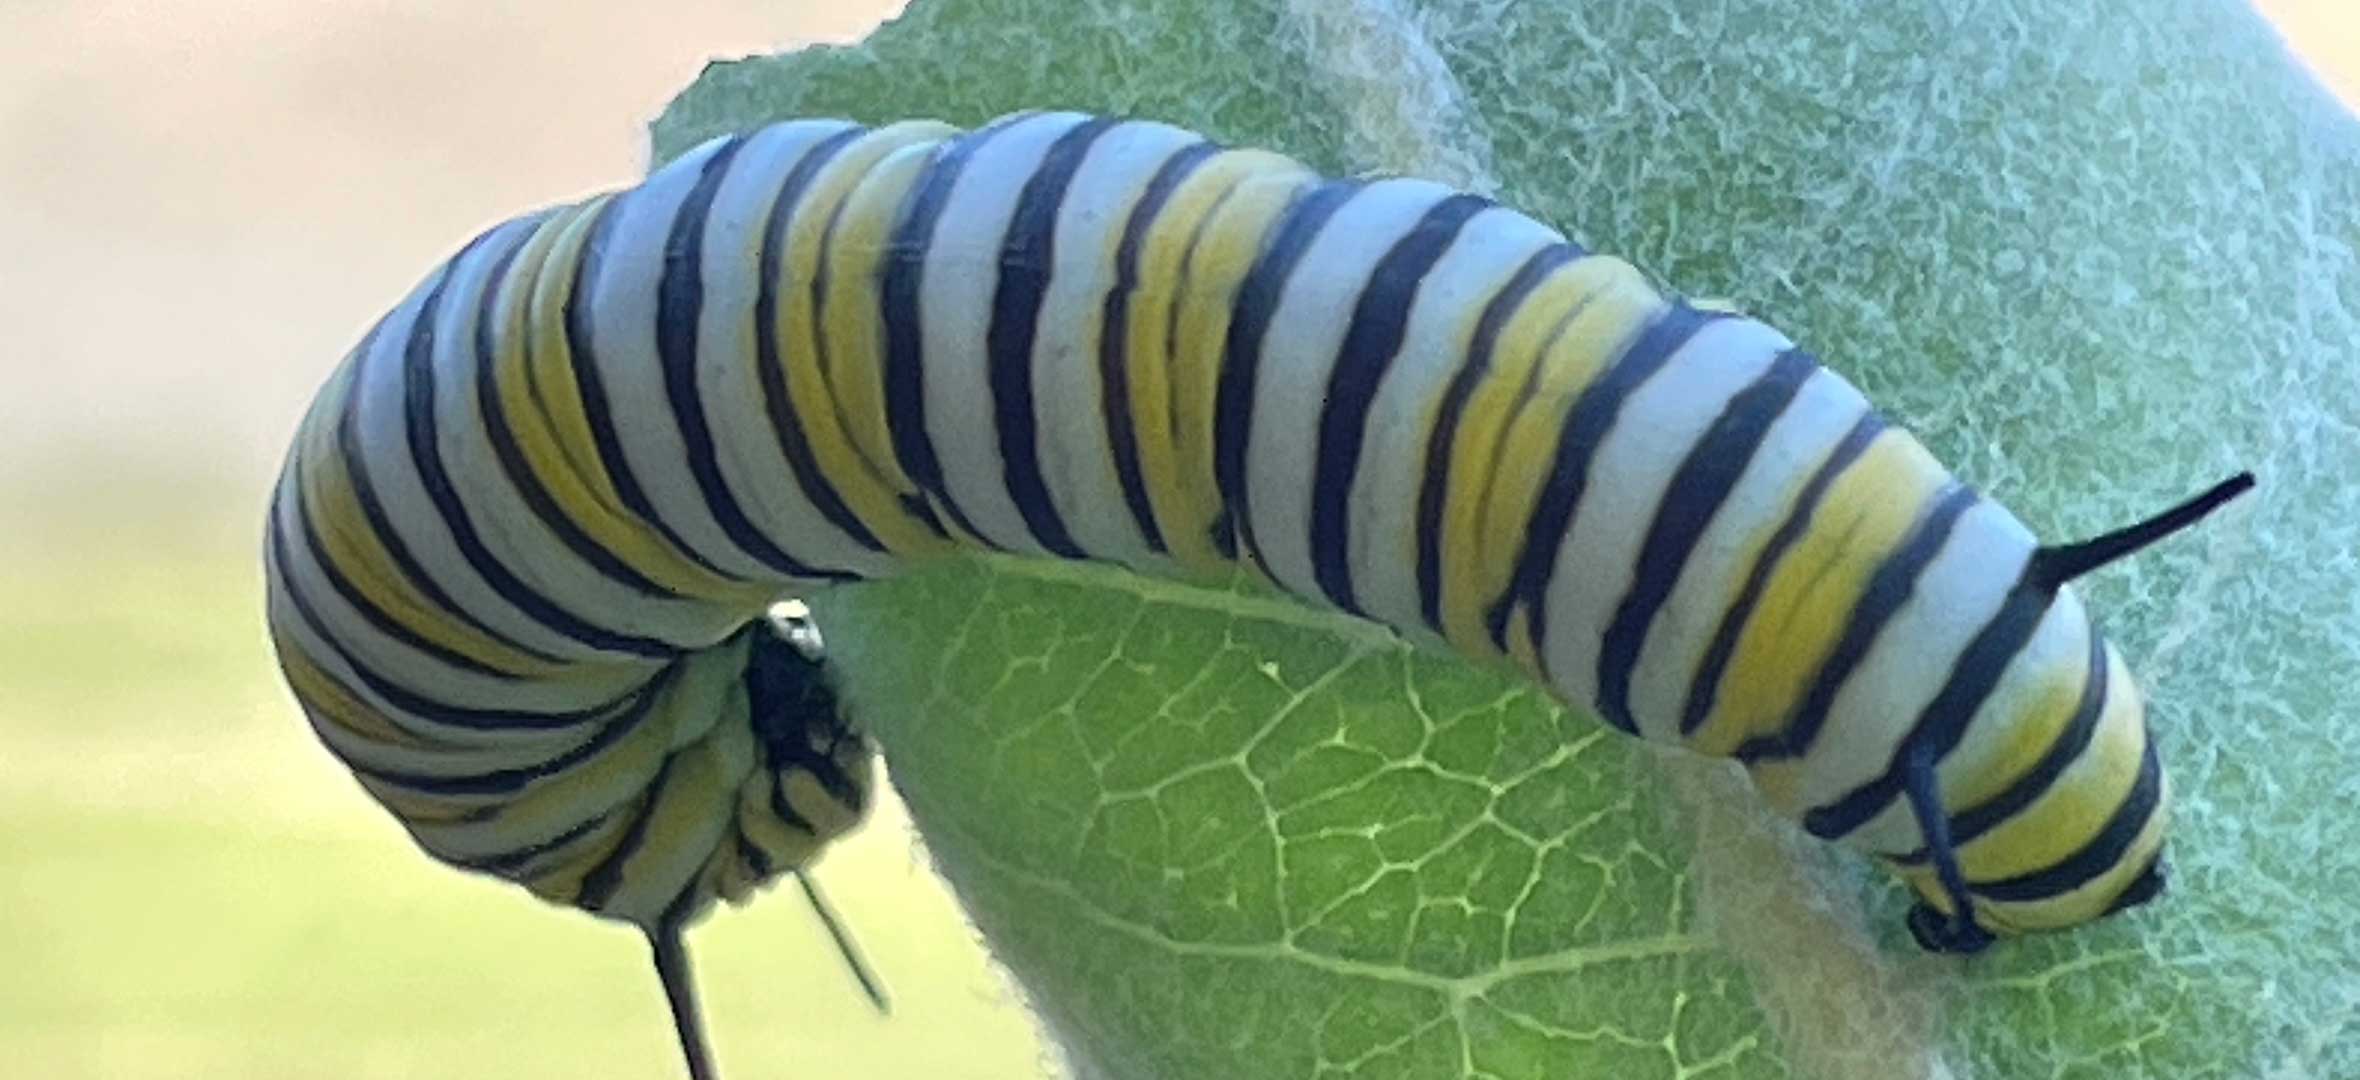 A monarch caterpillar in the Okanagan.